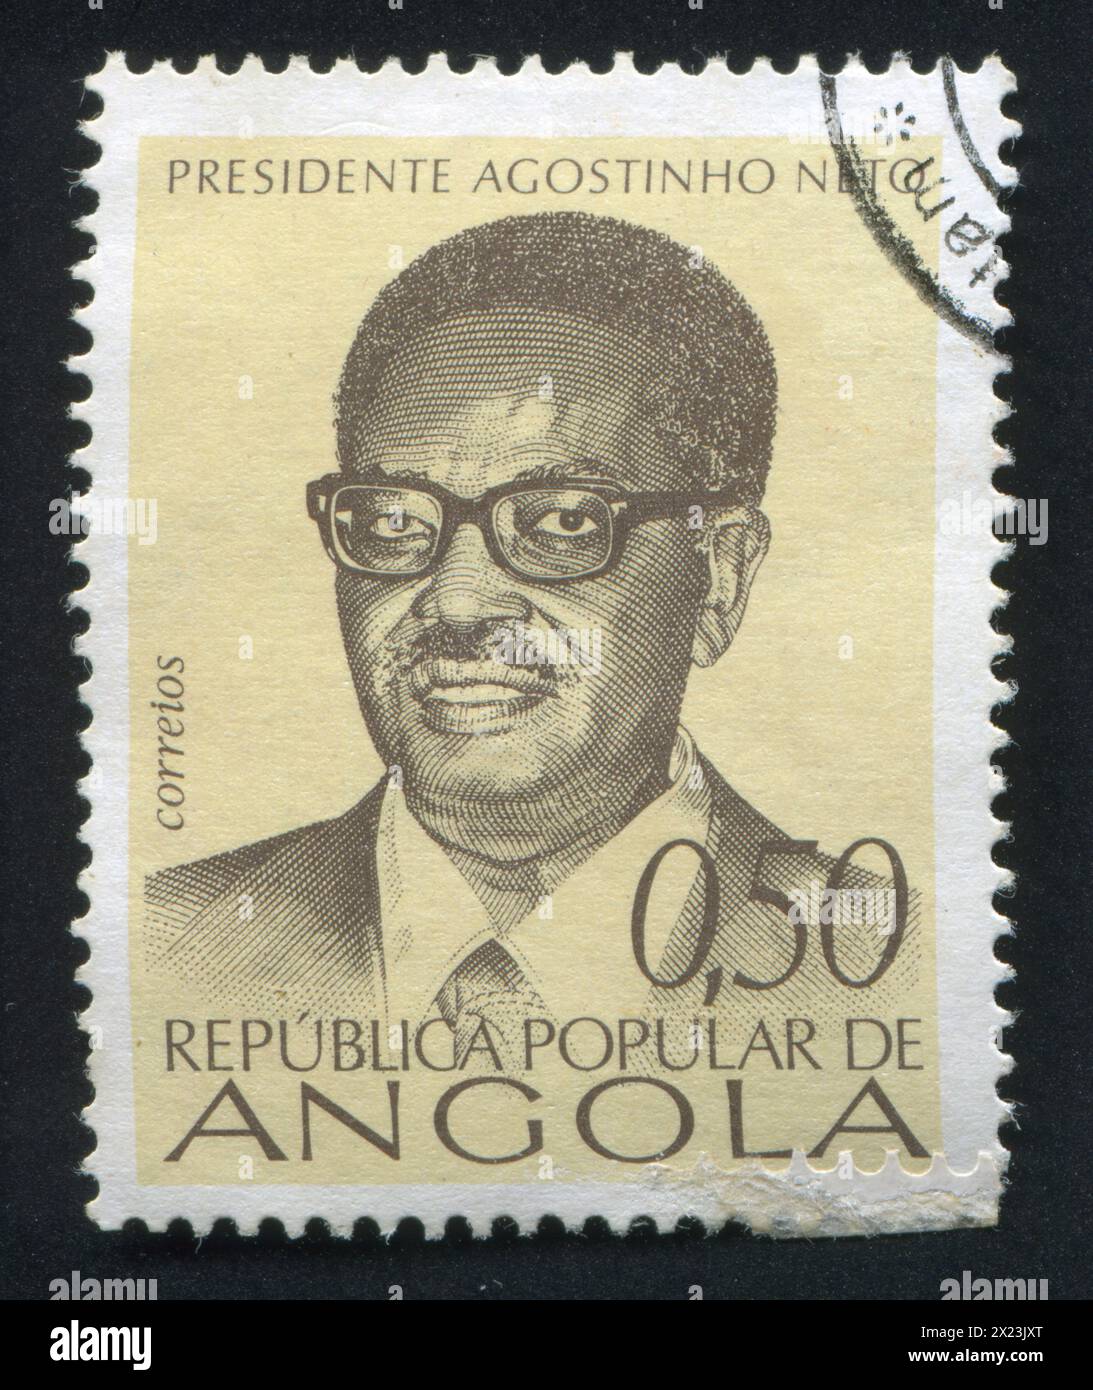 ANGOLA - VERS 1976 : timbre imprimé par l'Angola, montrant Agostinho Neto, vers 1976 Banque D'Images